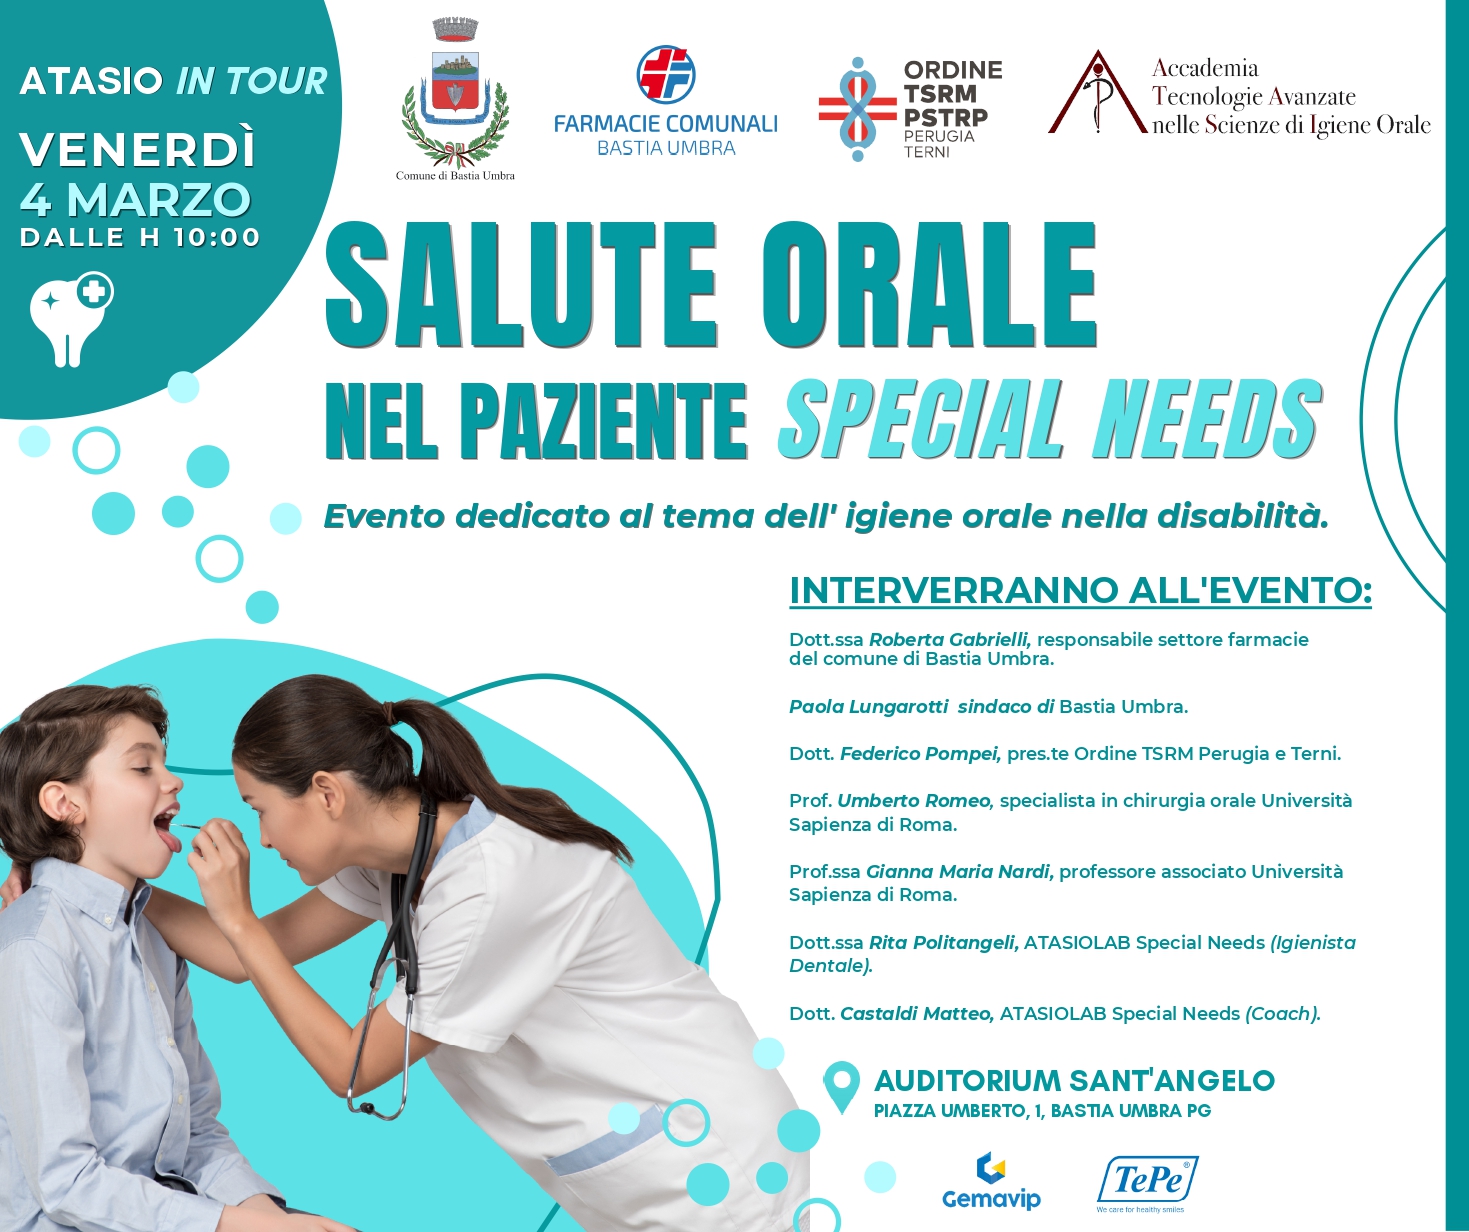 SALUTE ORALE NEL PAZIENTE SPECIAL NEEDS: Evento dedicato al tema dell'igiene orale nella disabilità - venerdì 4 marzo